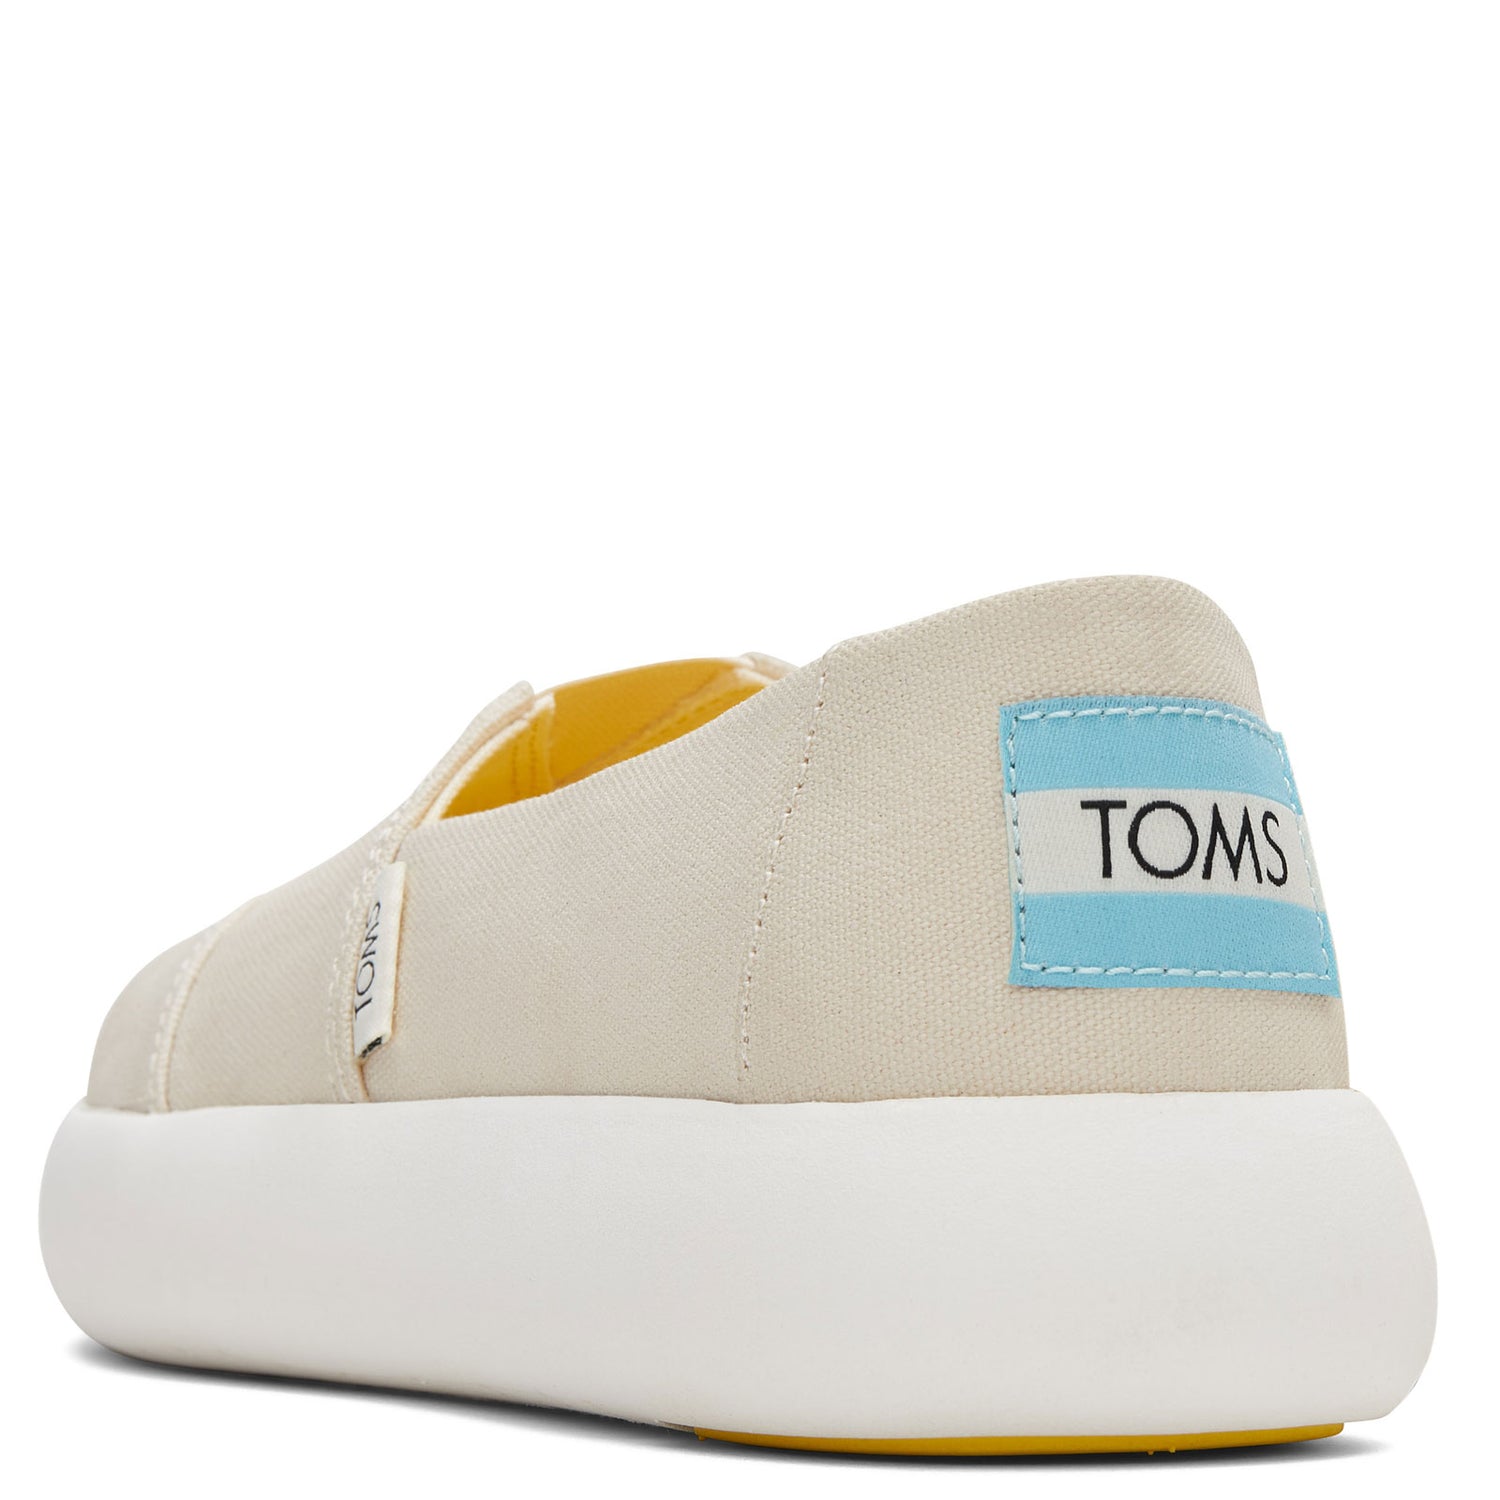 Peltz Shoes  Women's Toms Alpargata Mallow - Color Changing Slip-On APRICOT MULTI 10017841